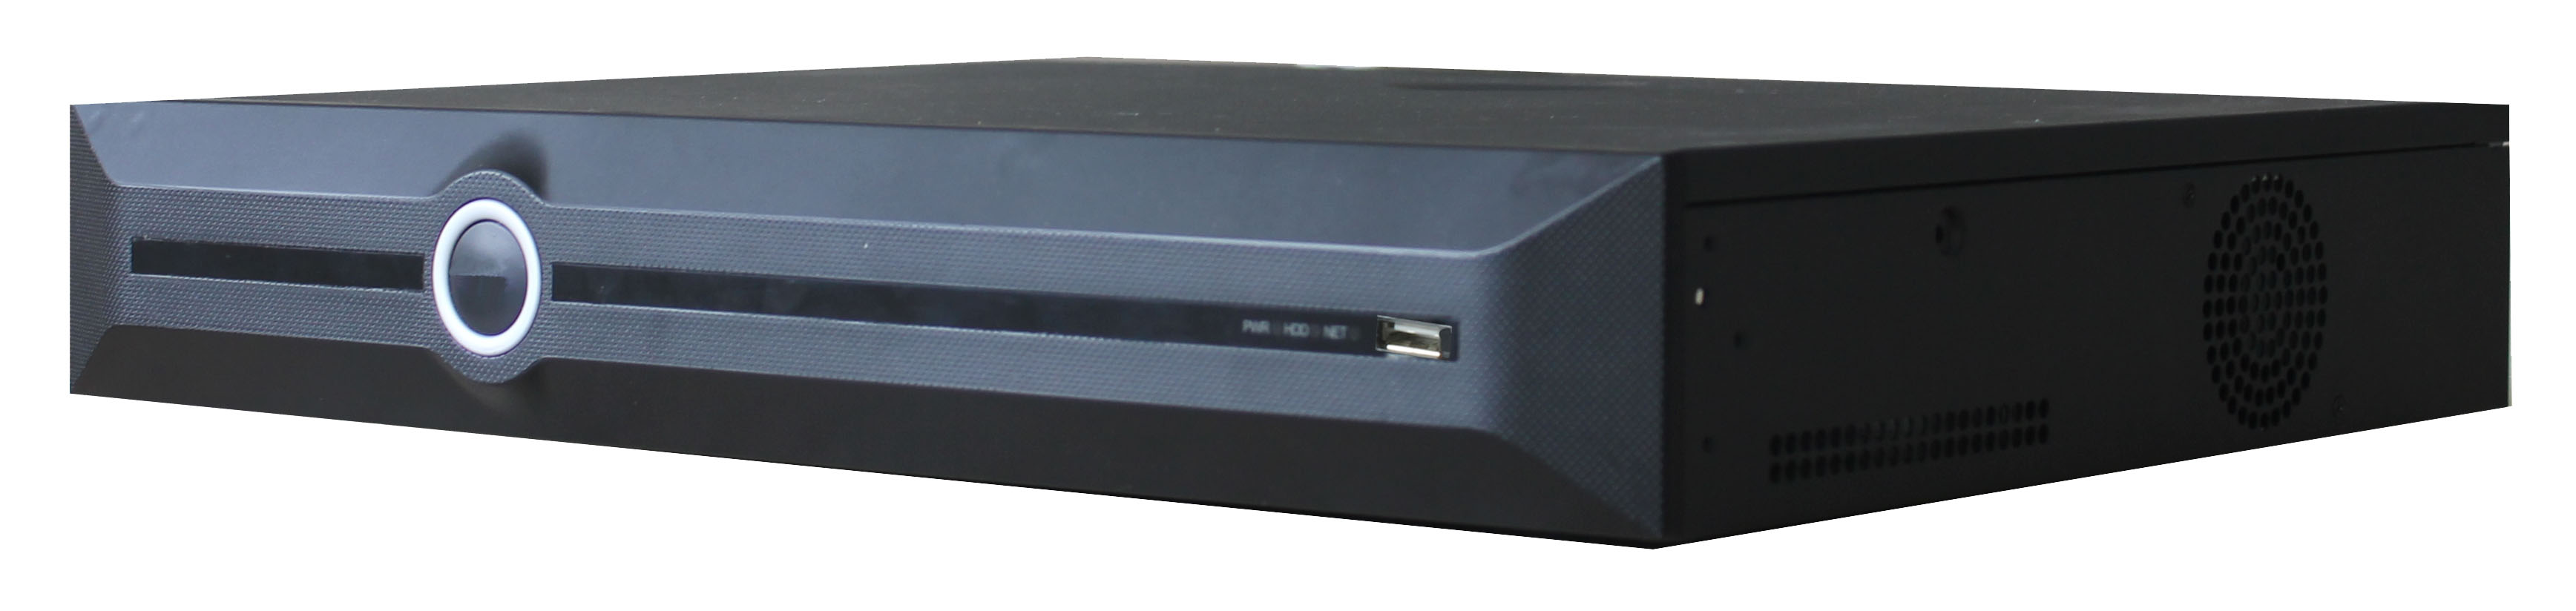 40路4盘H.265 NVR硬盘录像机